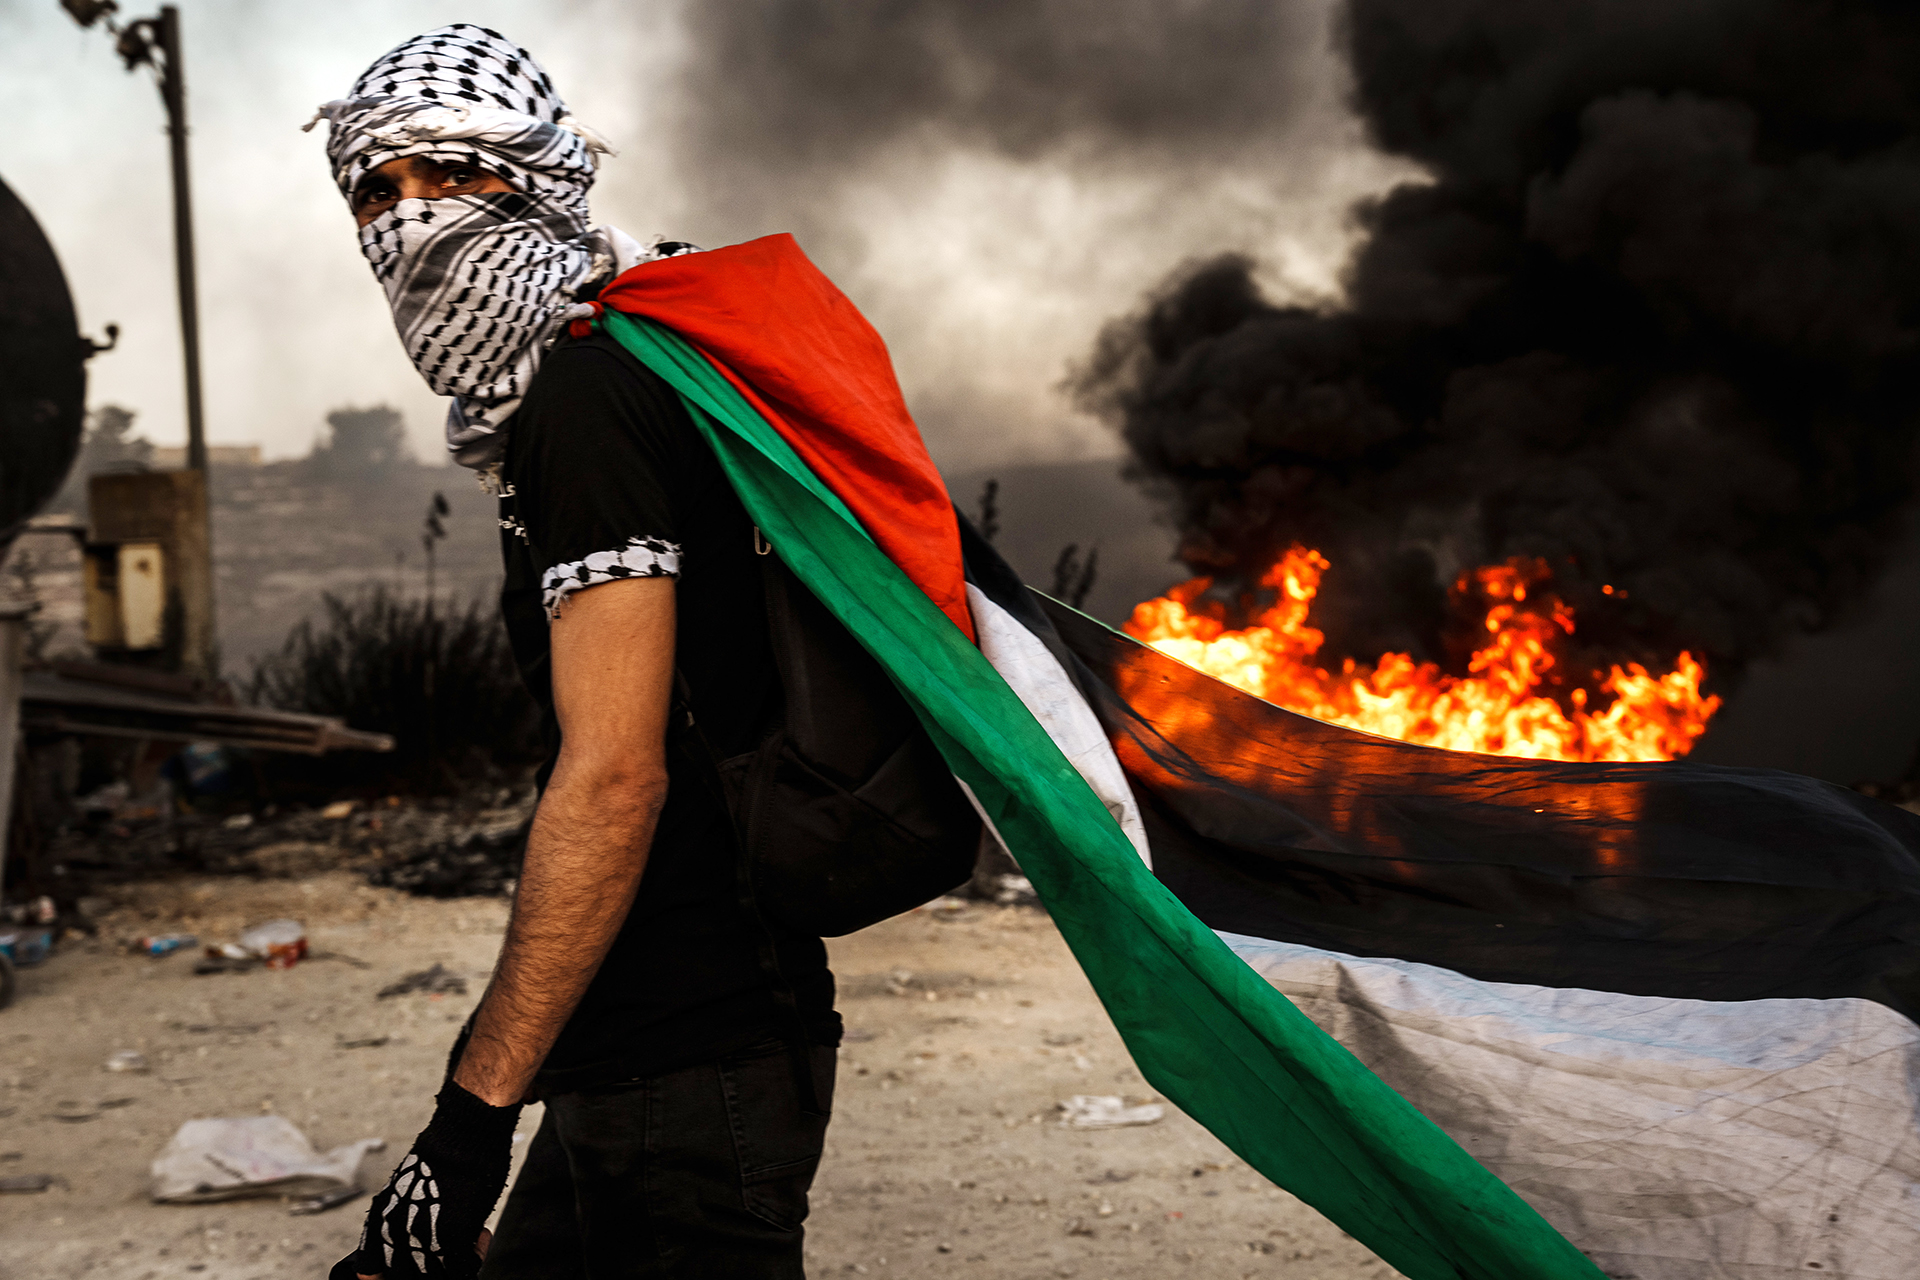 الضفة ومحاولات تكريس “وحدة الساحات” في ظل الحرب على غزة | سياسة – البوكس نيوز